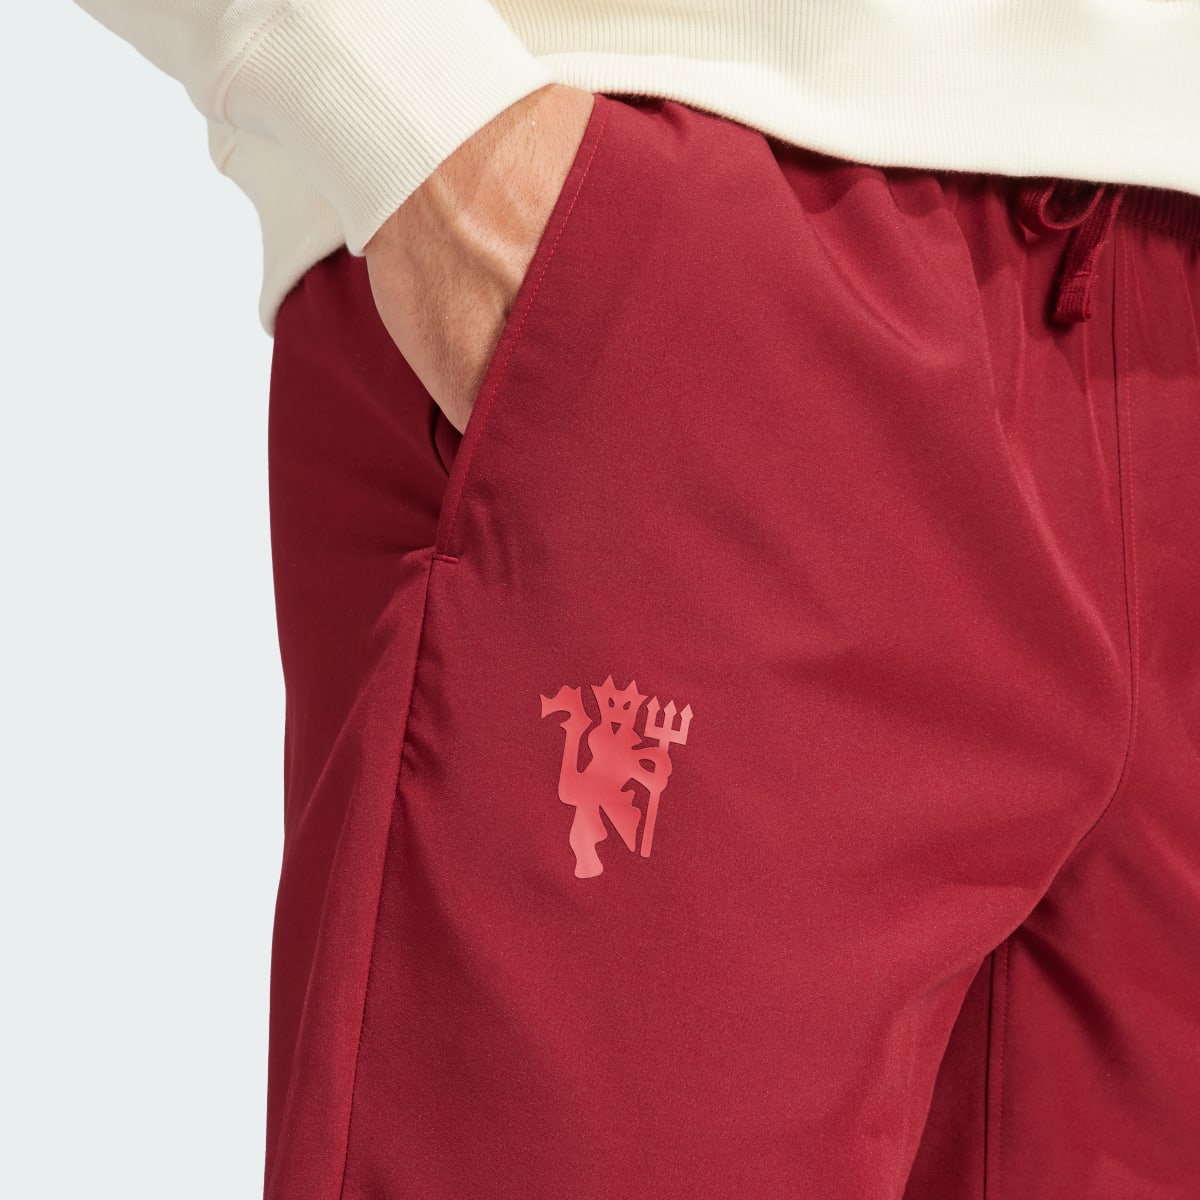 Adidas Spodnie Manchester United LFSTLR Woven. 6